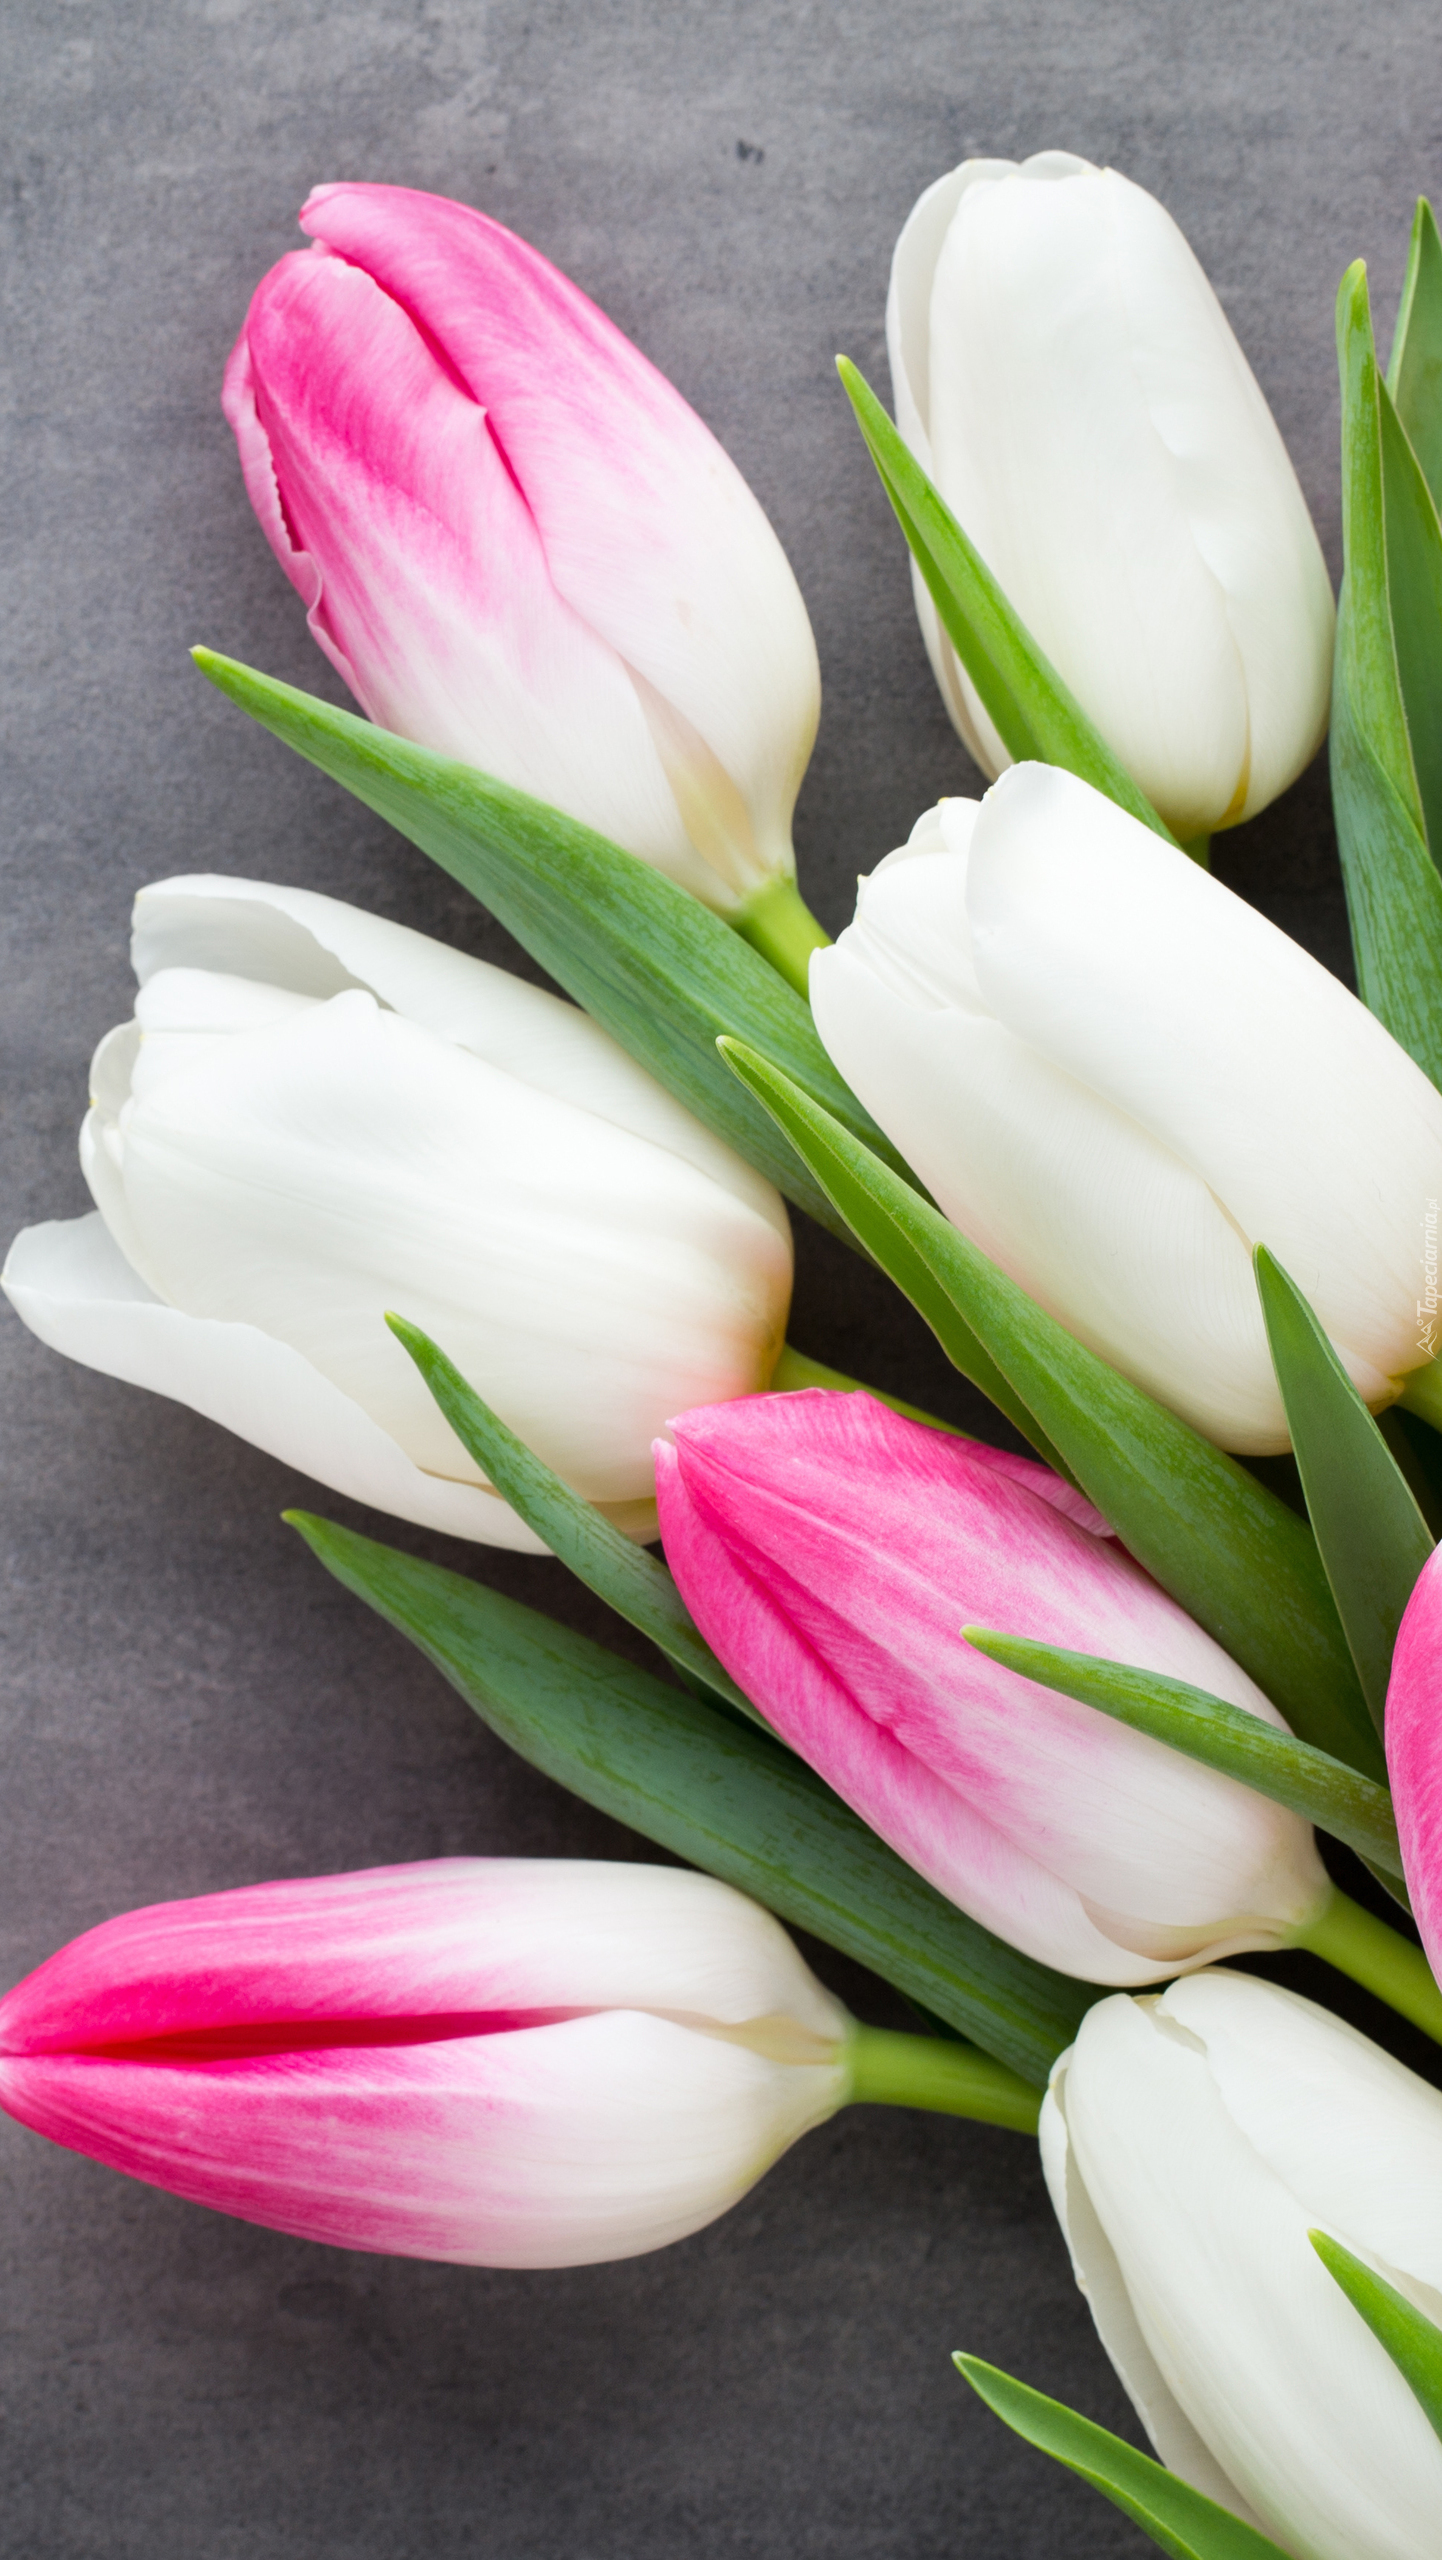 Różowo-białe tulipany